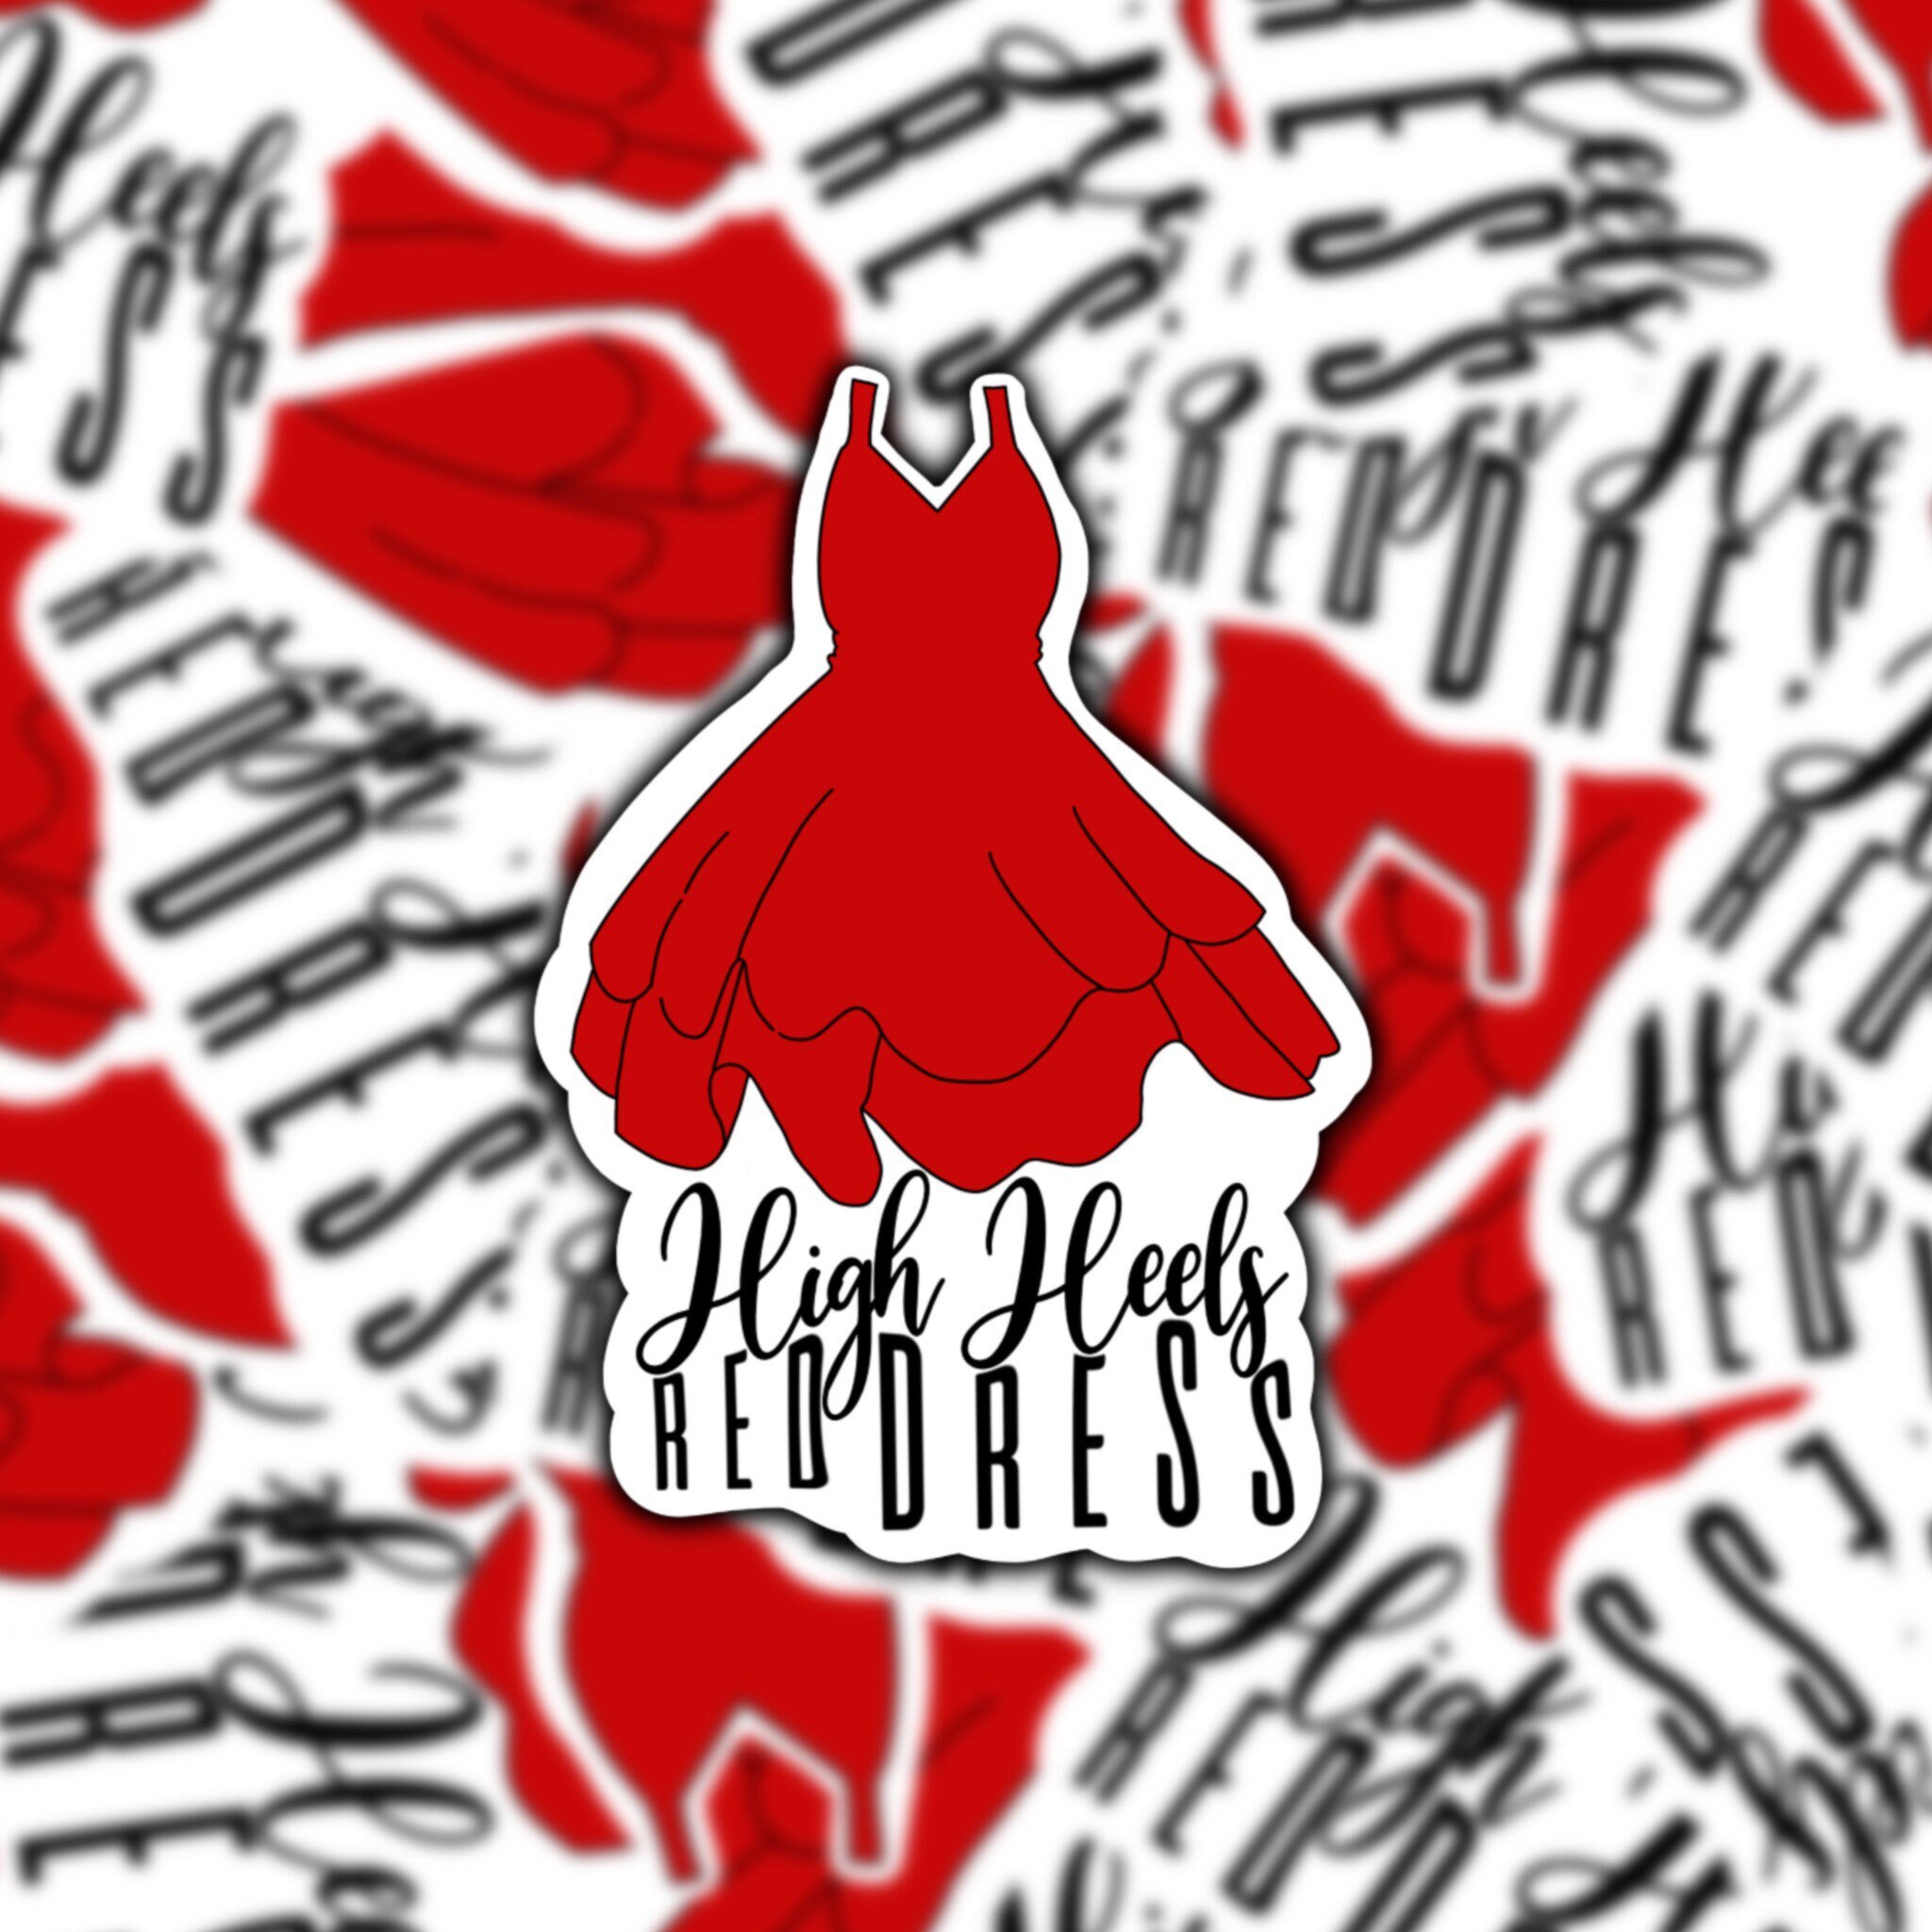 Arthur Conan Doyle muskel Ondartet tumor High Heels Red Dress Burnin up Inspired Sticker Jonas - Etsy